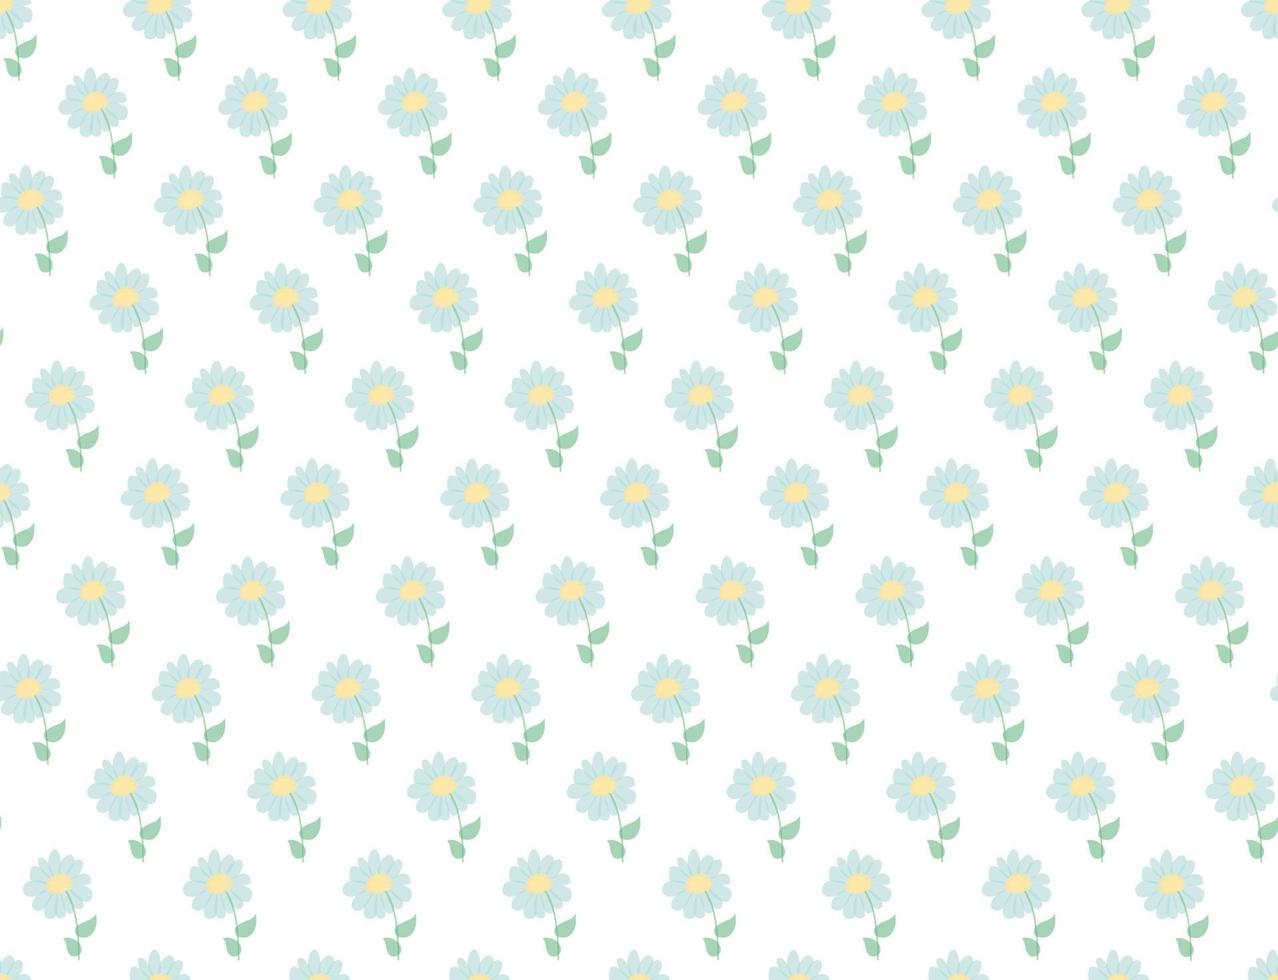 bloemenpatroon. mooie bloemen op een witte achtergrond. bedrukking met kleine blauwe bloemen. ditsy print. lente achtergrond. schattig bloemenpatroon in de kleine bloem. bloemen kamille achtergrond voor textiel vector